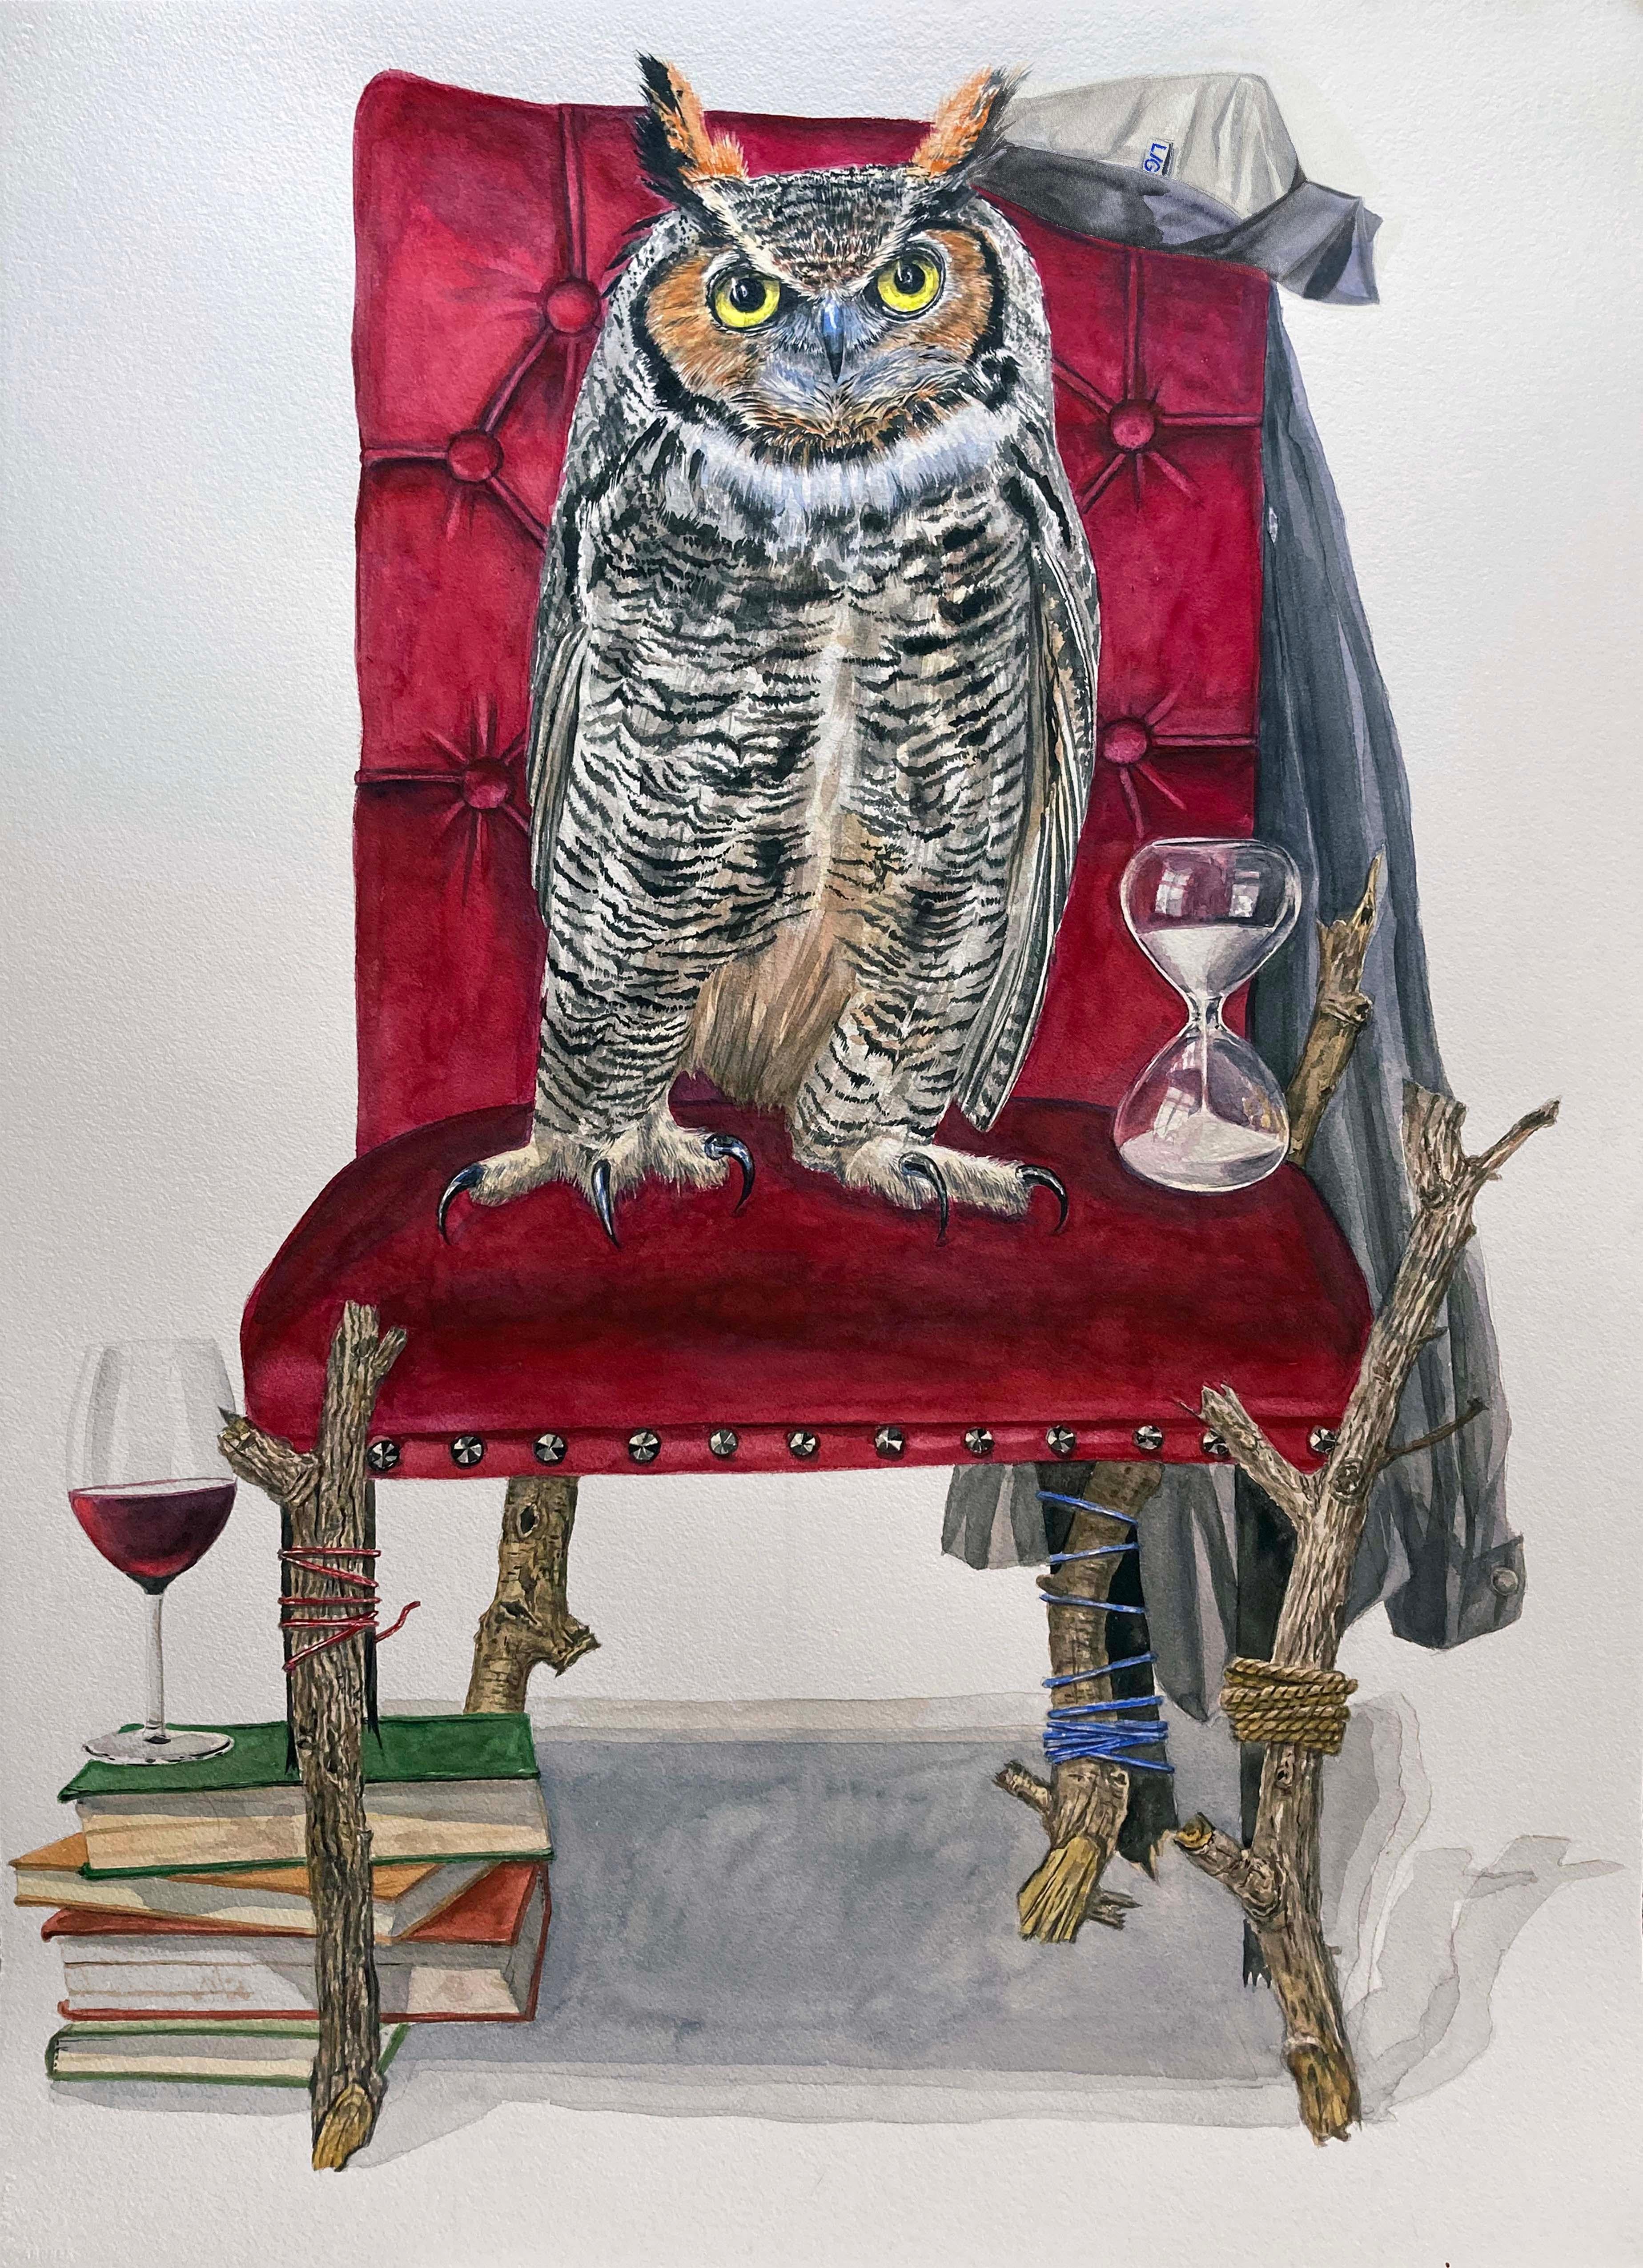 "The Hours" Animal Still Life, great horned owl, hourglass, red velvet chair